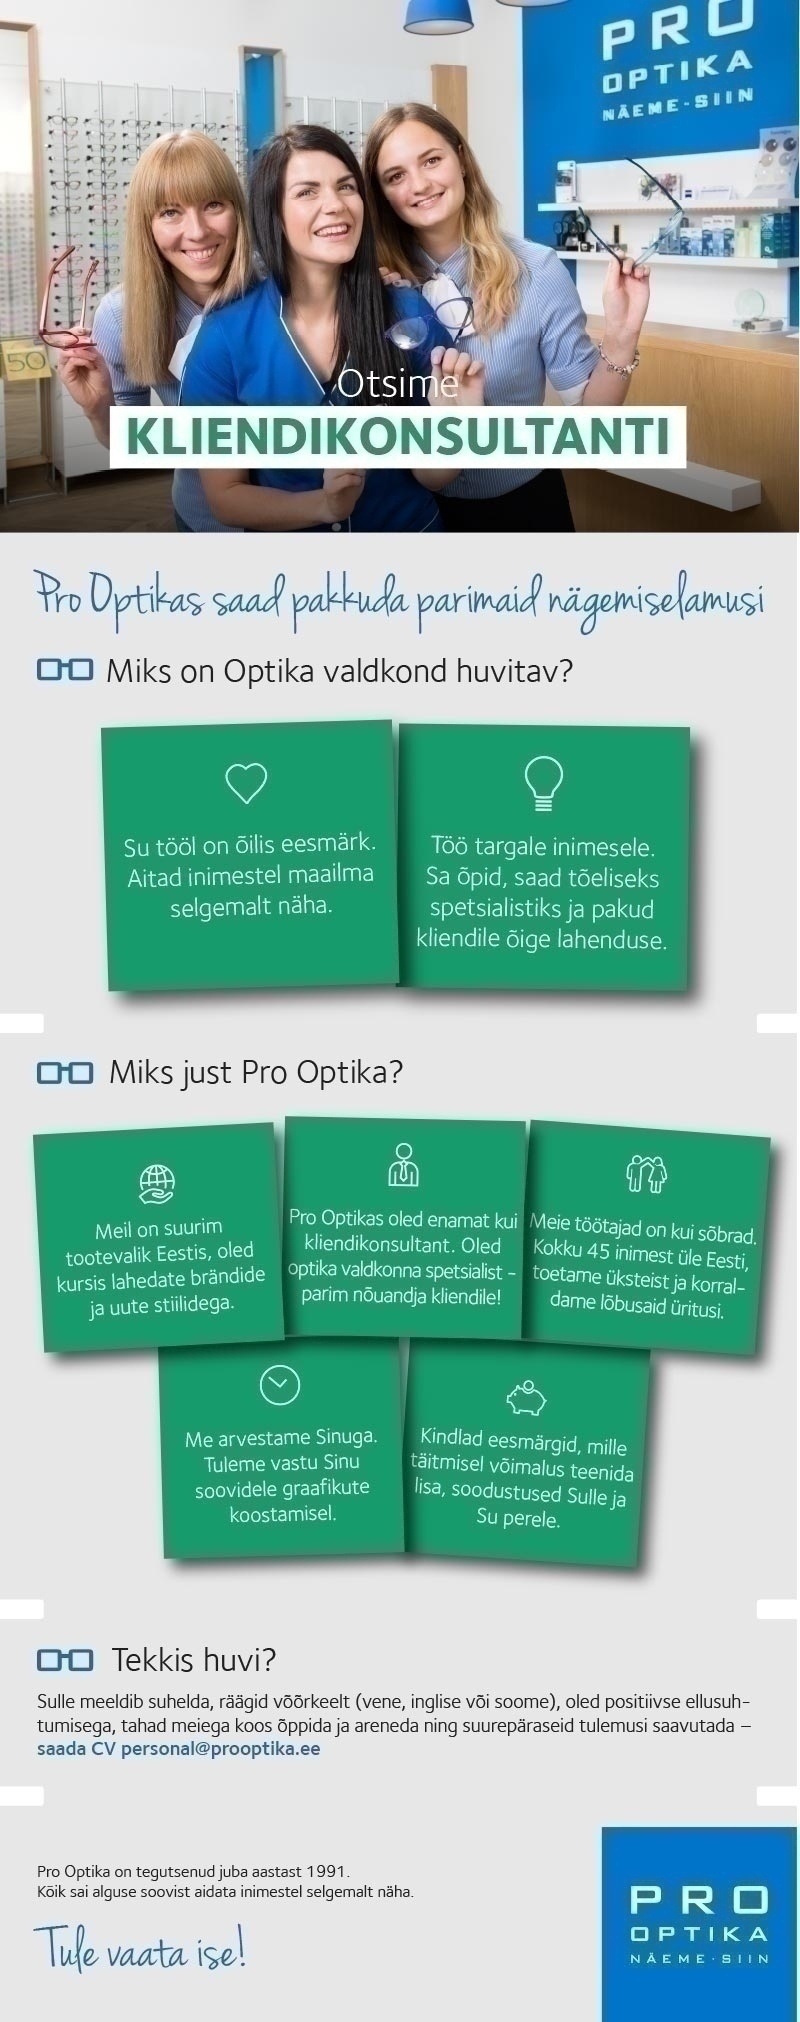 Pro Optika Kliendikonsultant Tallinnas- saa koos meiega optika valdkonna spetsialistiks!